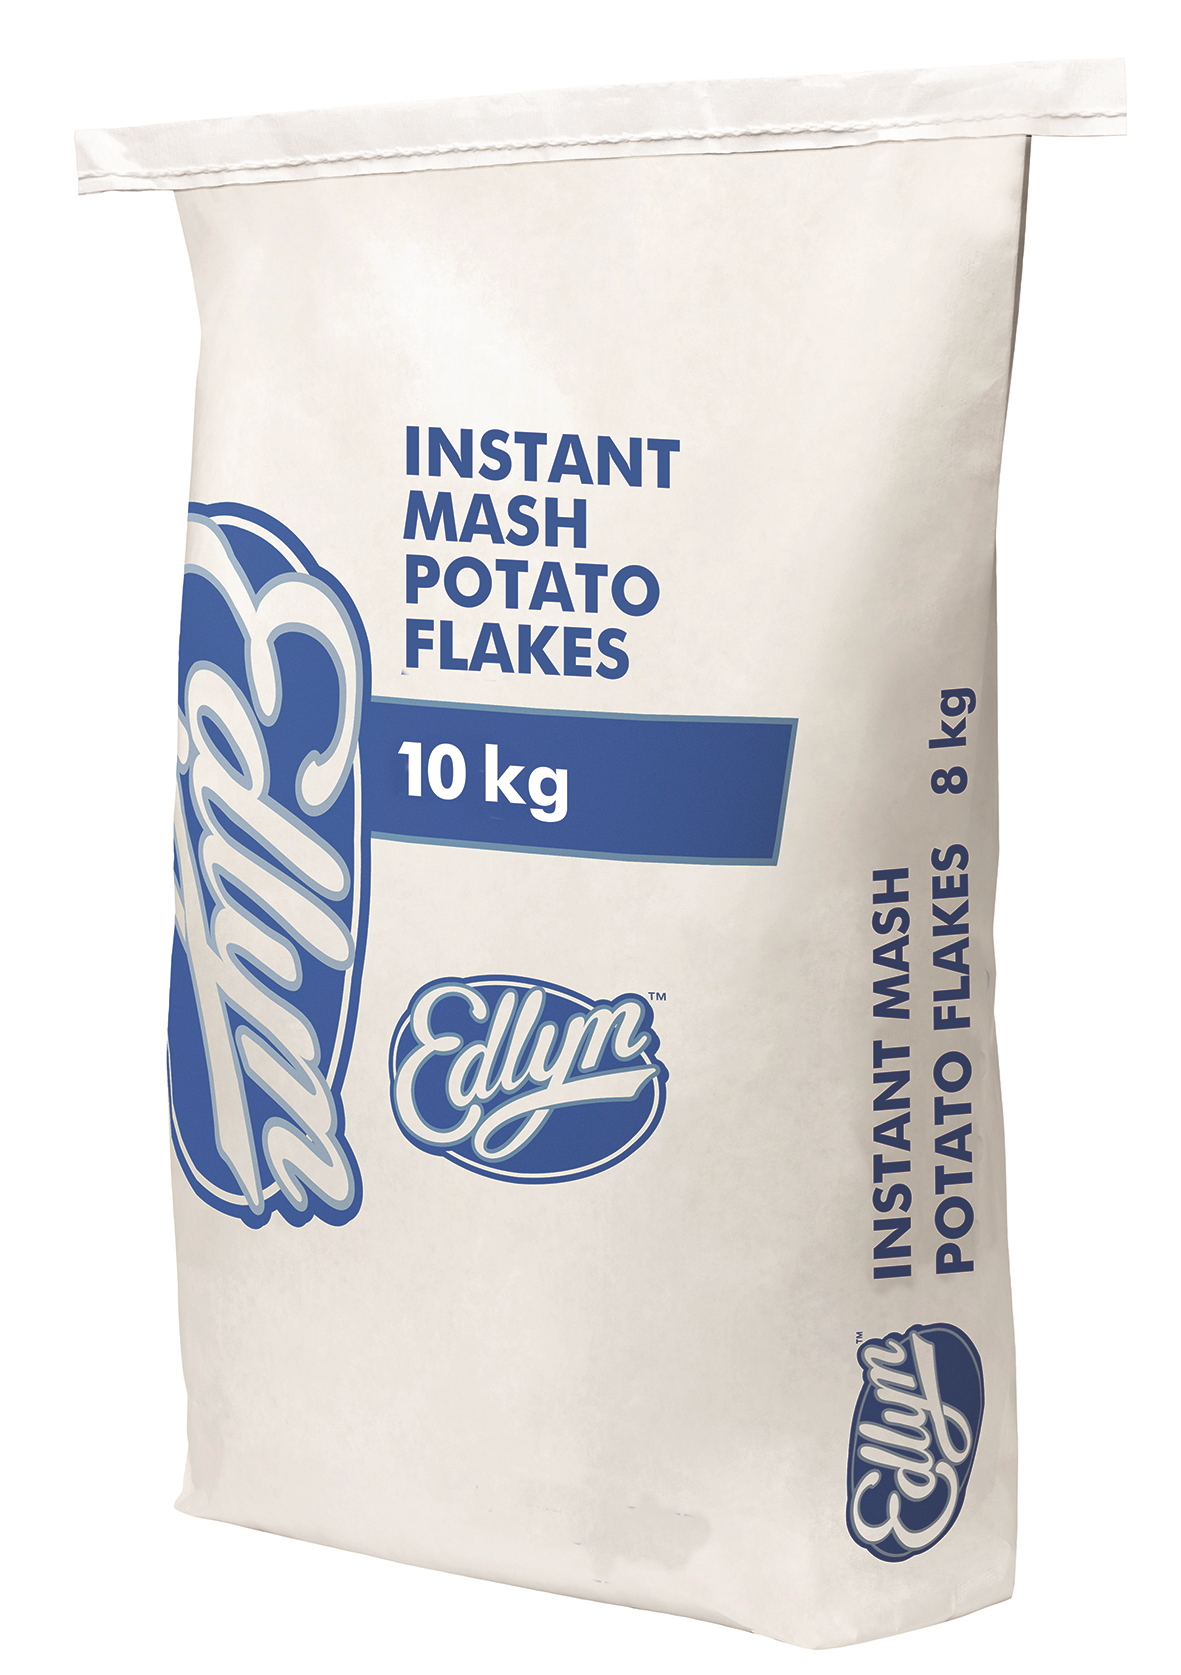 Instant Mash Potato Flakes 10kg - Edlyn